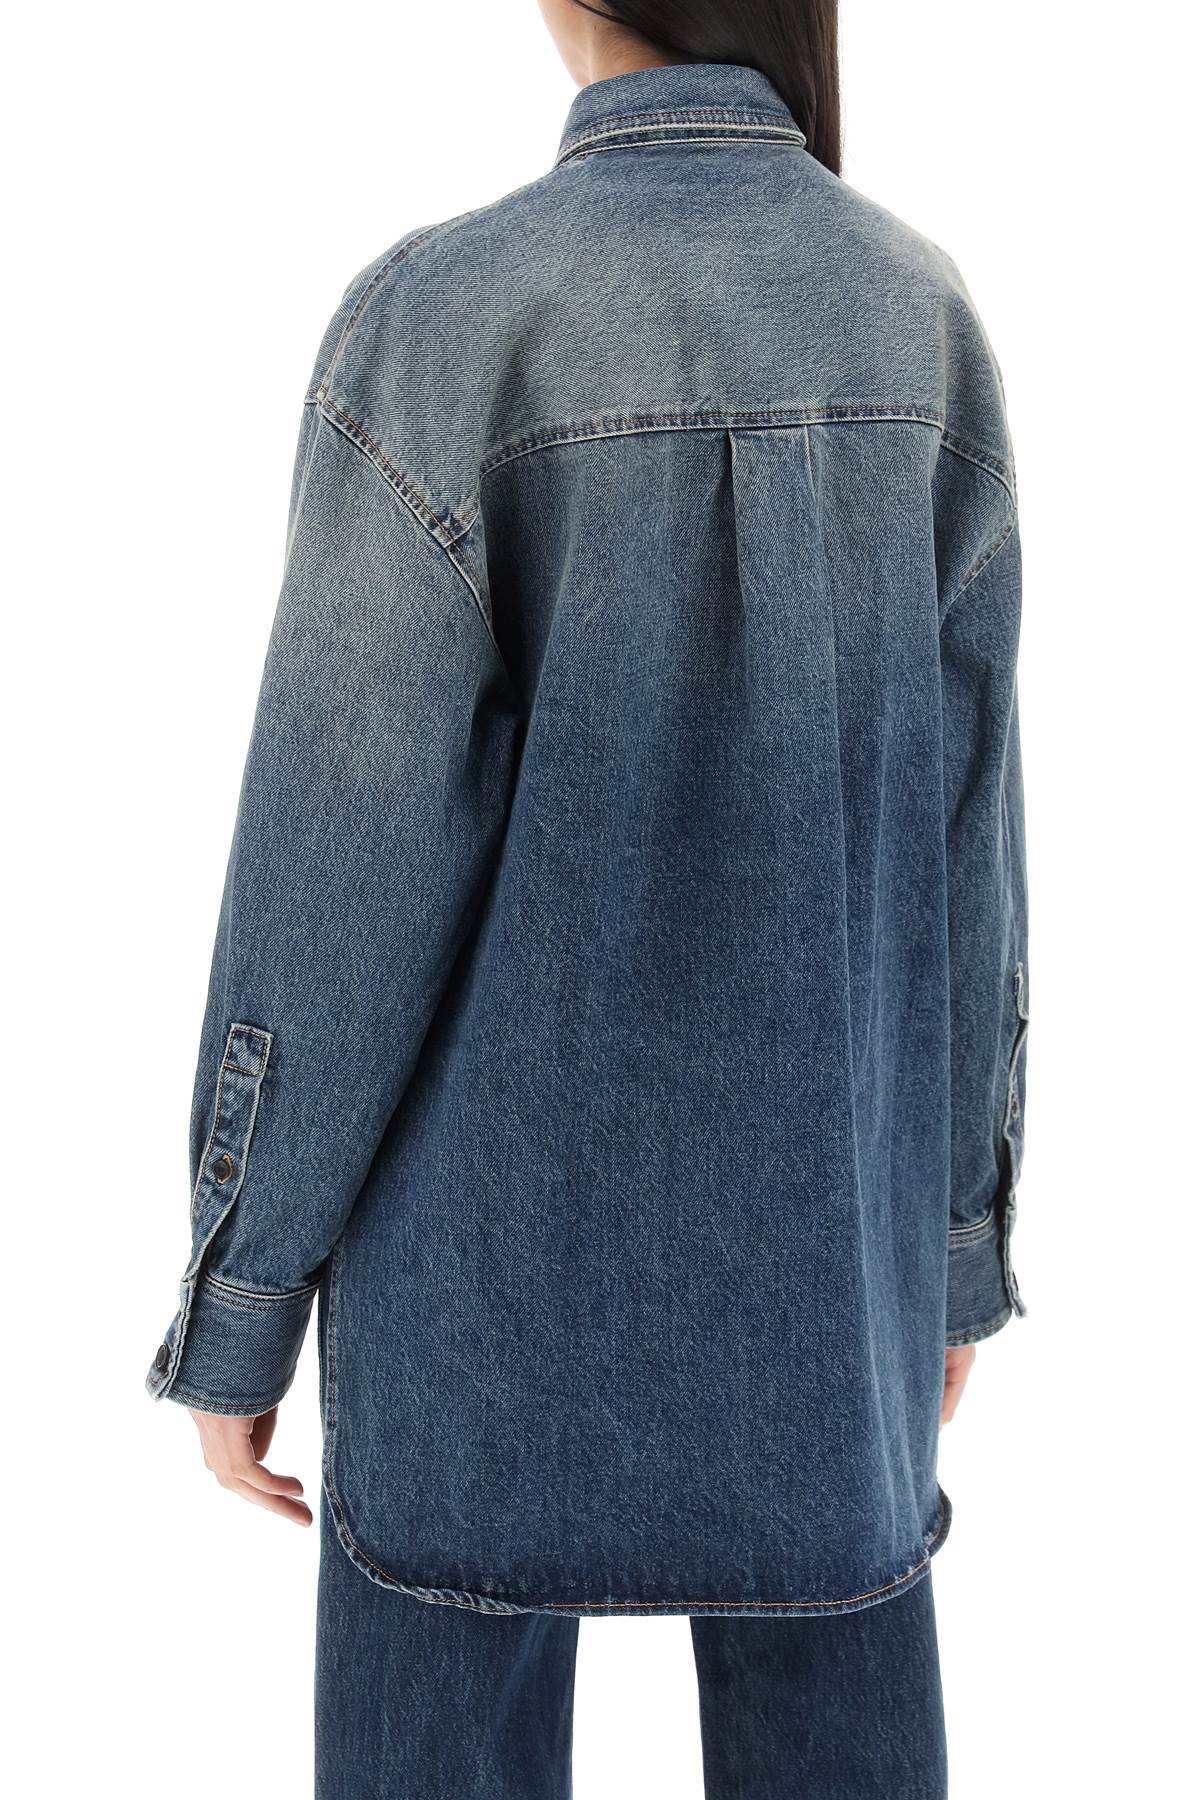 Áo sơ mi lớn Mahmet dành cho nữ: Vải denim màu xanh ngậm, cắt asymmetrical, túi nắp